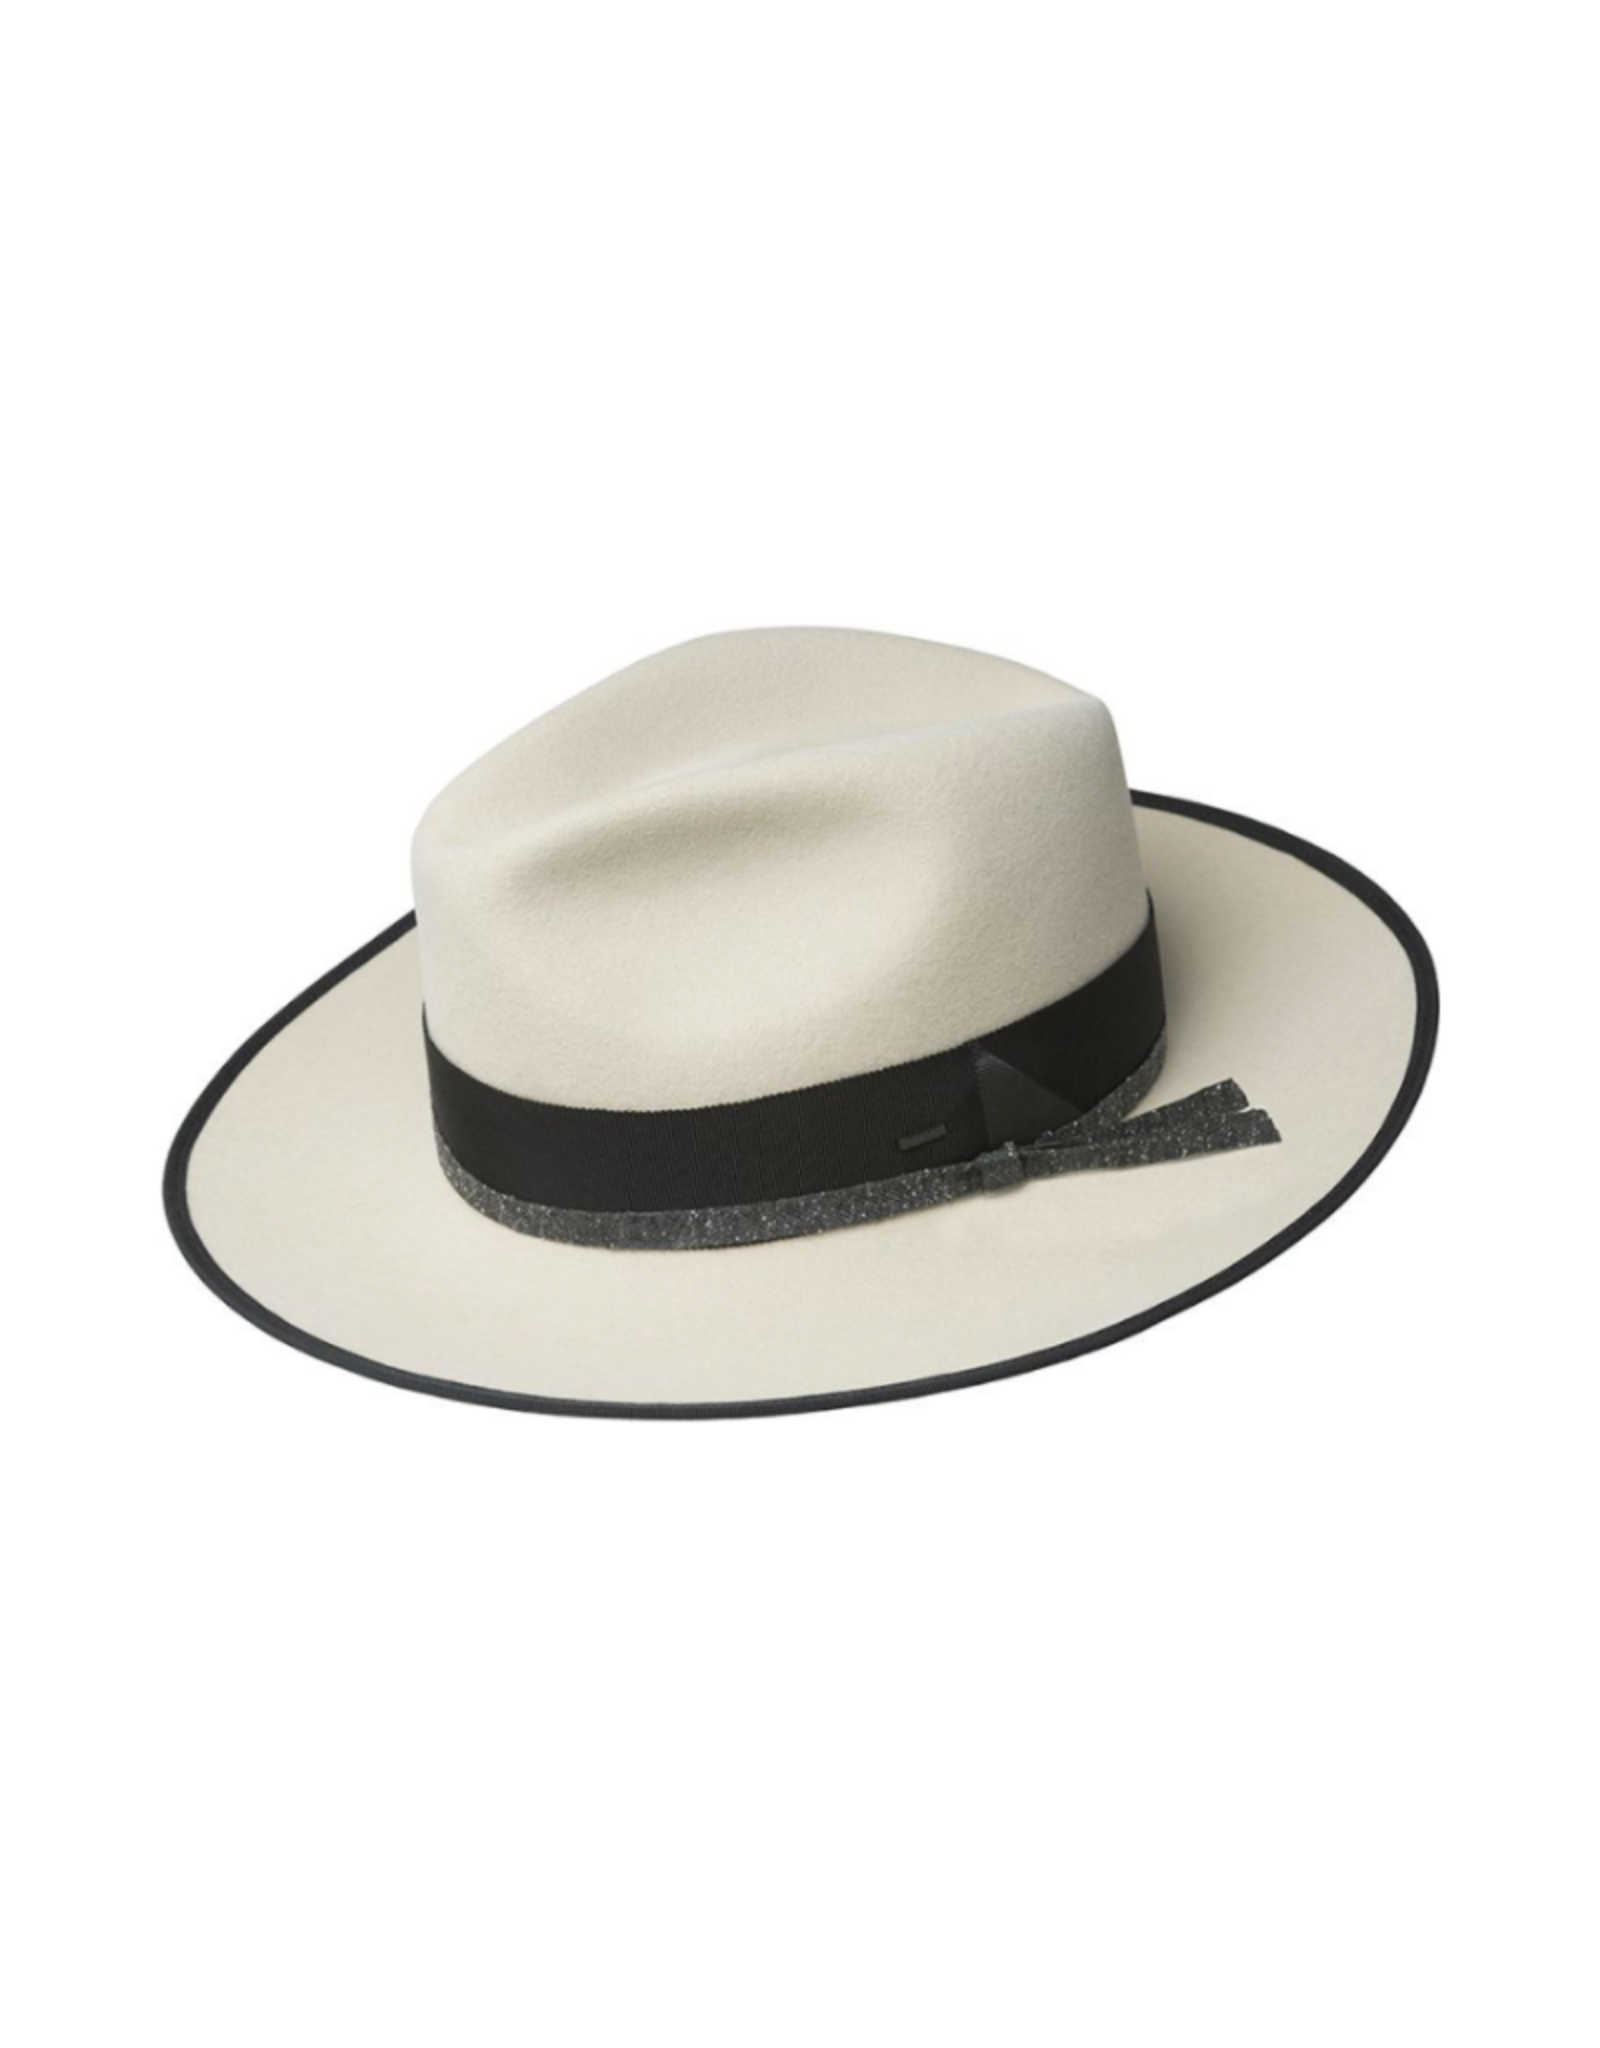 Bailey Hat Co. HAT-FEDORA "CLORINDON" W/BOUND BRIM